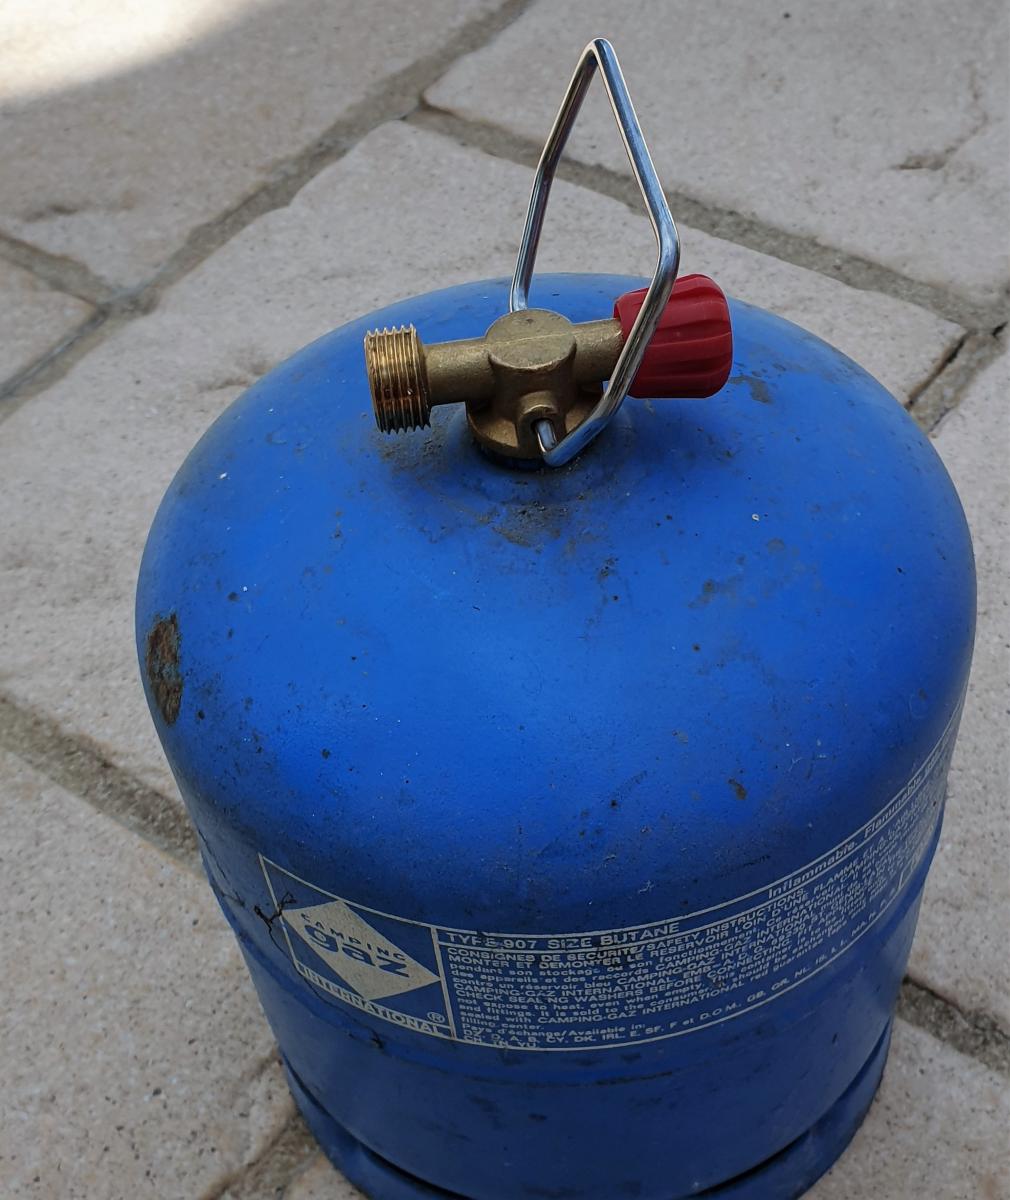 Comment connecter votre bouteille de gaz propane avec connecteur